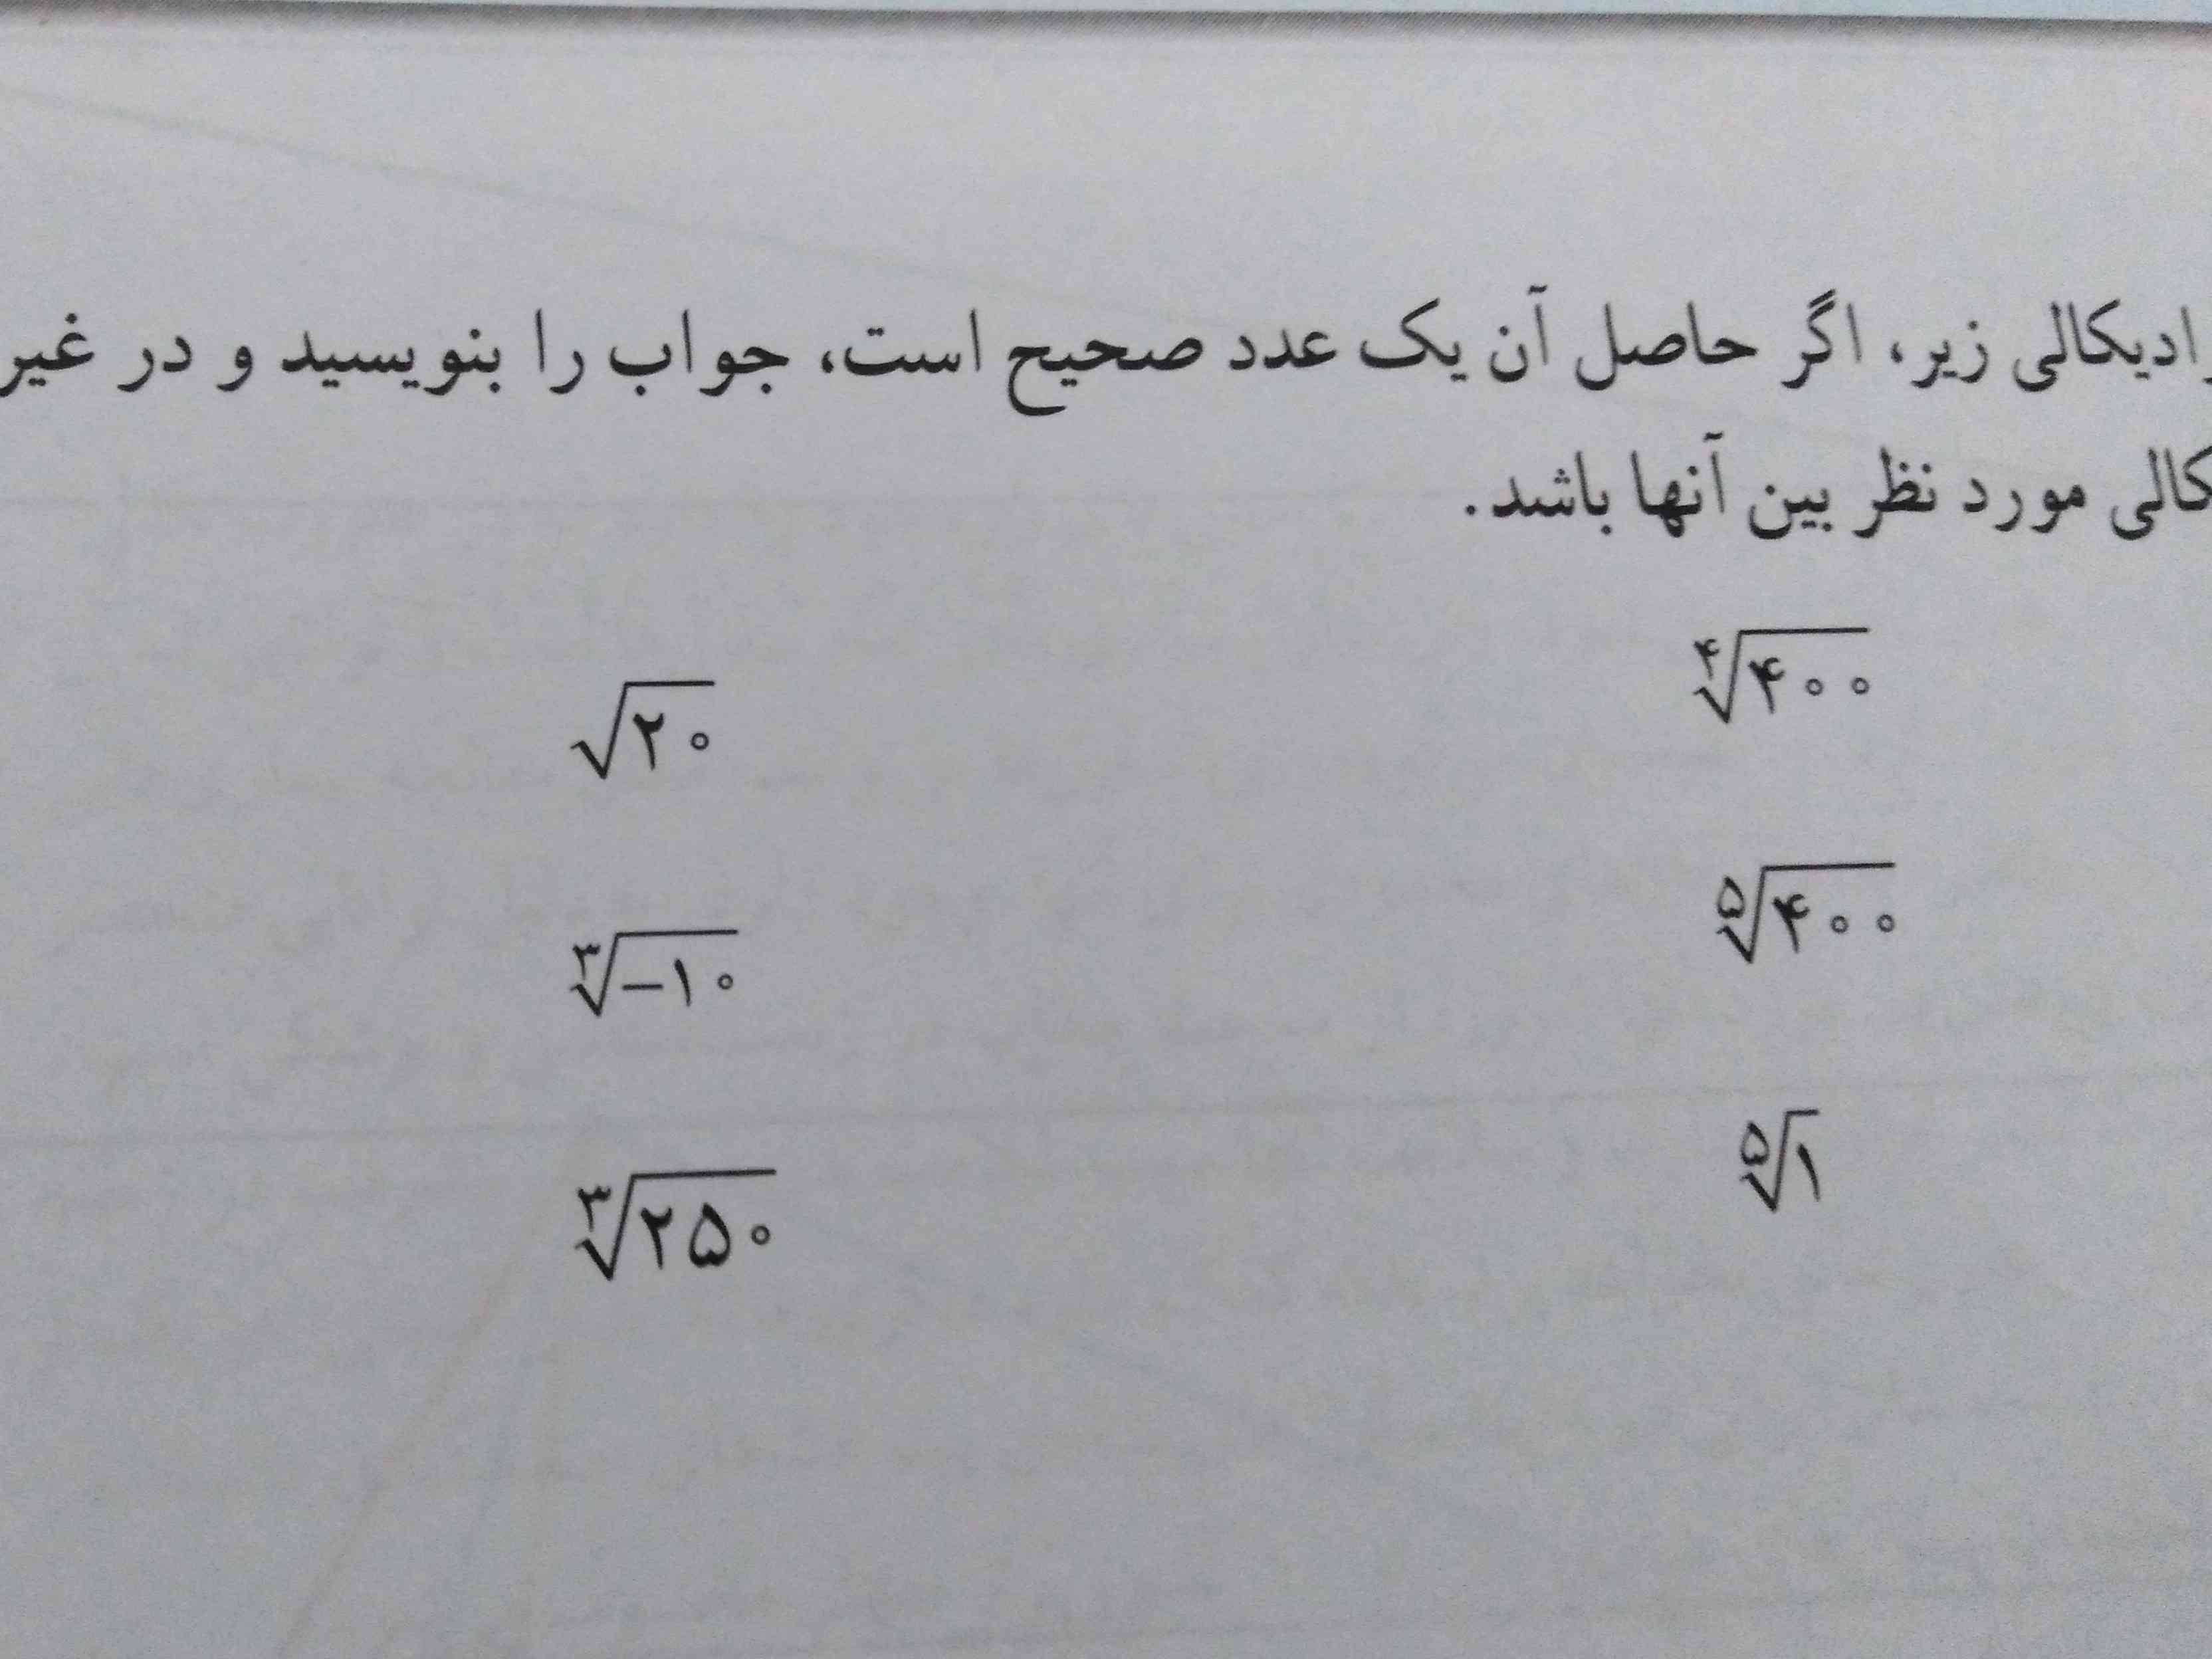 لطفا جواب تمرین اول ریاضی صفحه۵۱ رو بفرستید